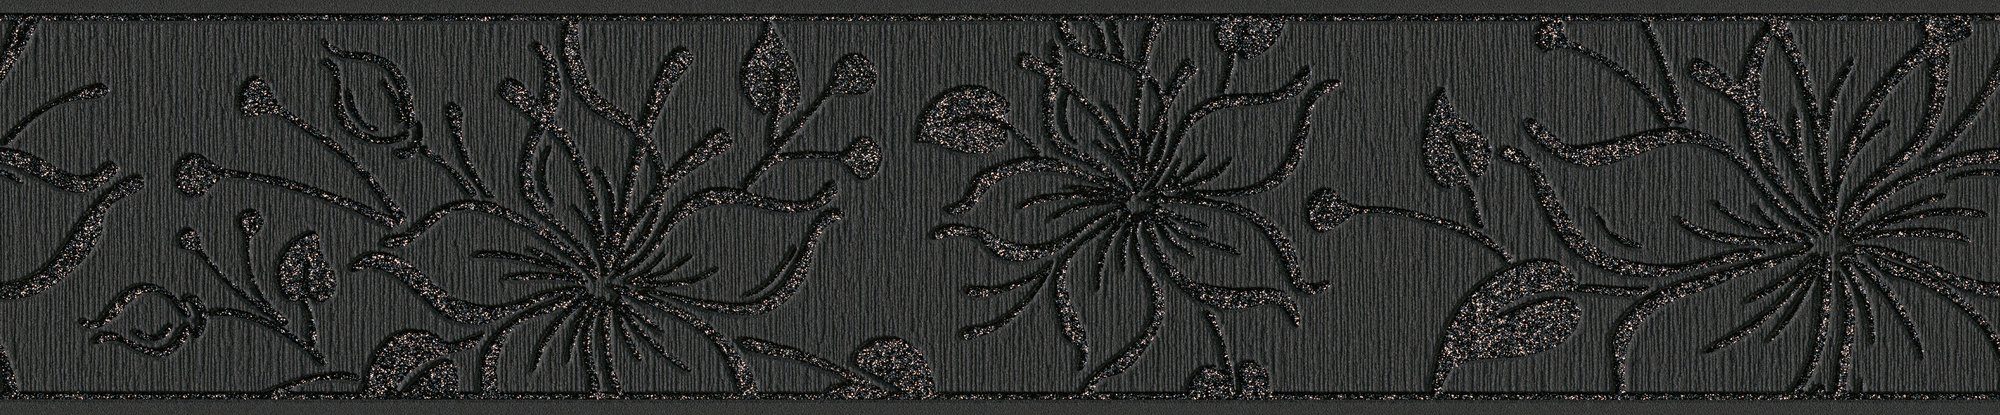 Holzoptik Bordüre aufgeschäumt, Only floral, A.S. Borders, Tapete Création Bordüre schwarz/anthrazit